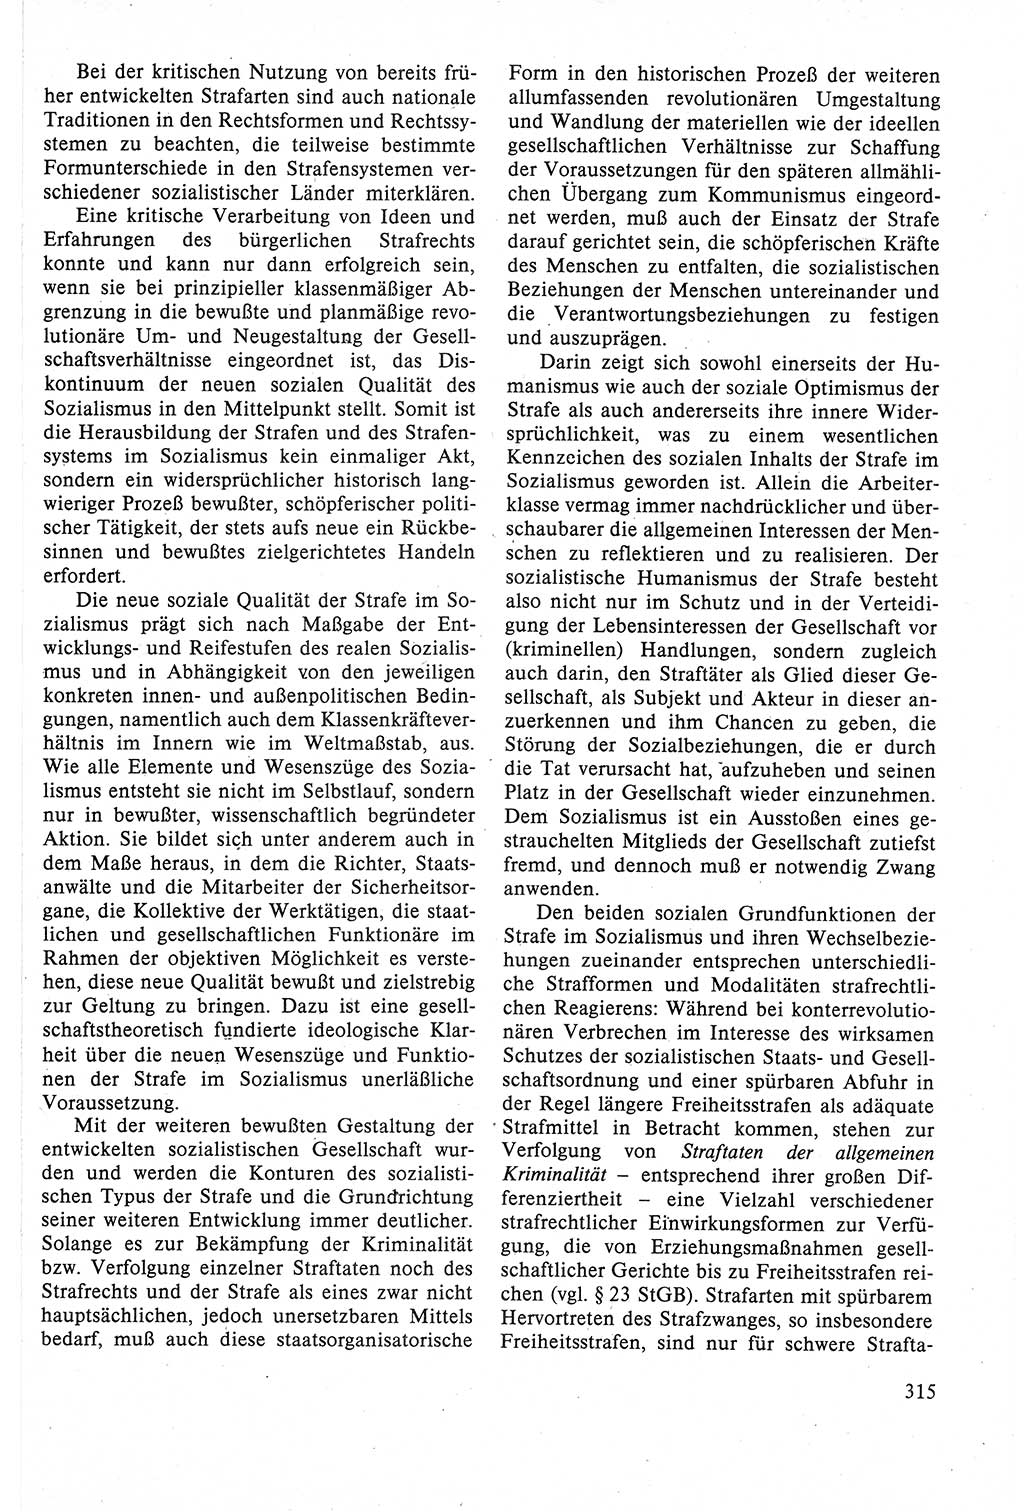 Strafrecht der DDR (Deutsche Demokratische Republik), Lehrbuch 1988, Seite 315 (Strafr. DDR Lb. 1988, S. 315)